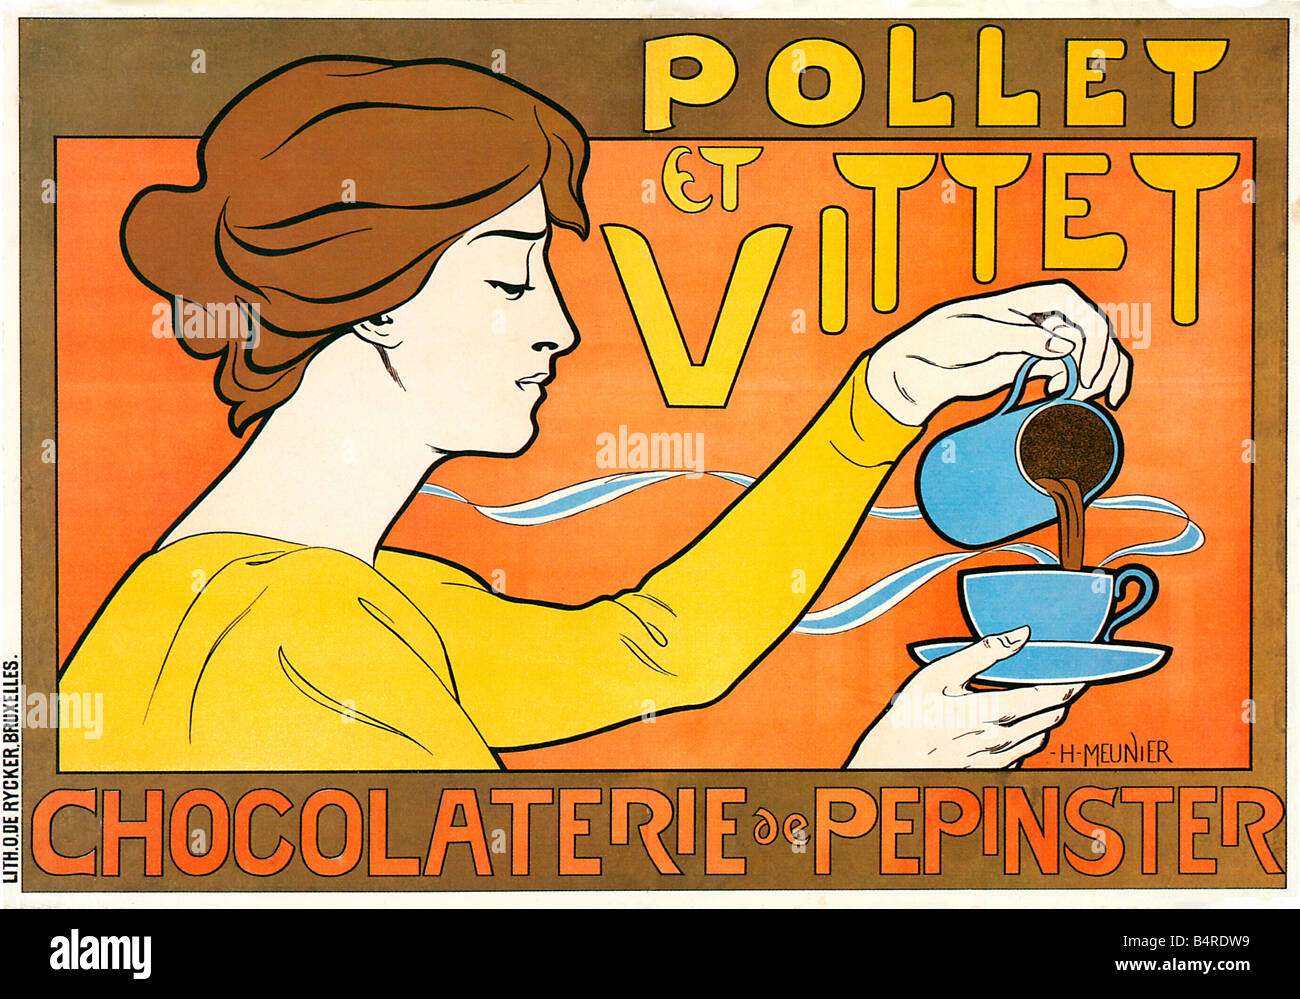 Pollet et Vittet belgische Schokolade 1896 Jugendstil-Plakat für die heiße Schokolade trinken von Pepinster in Belgien Stockfoto